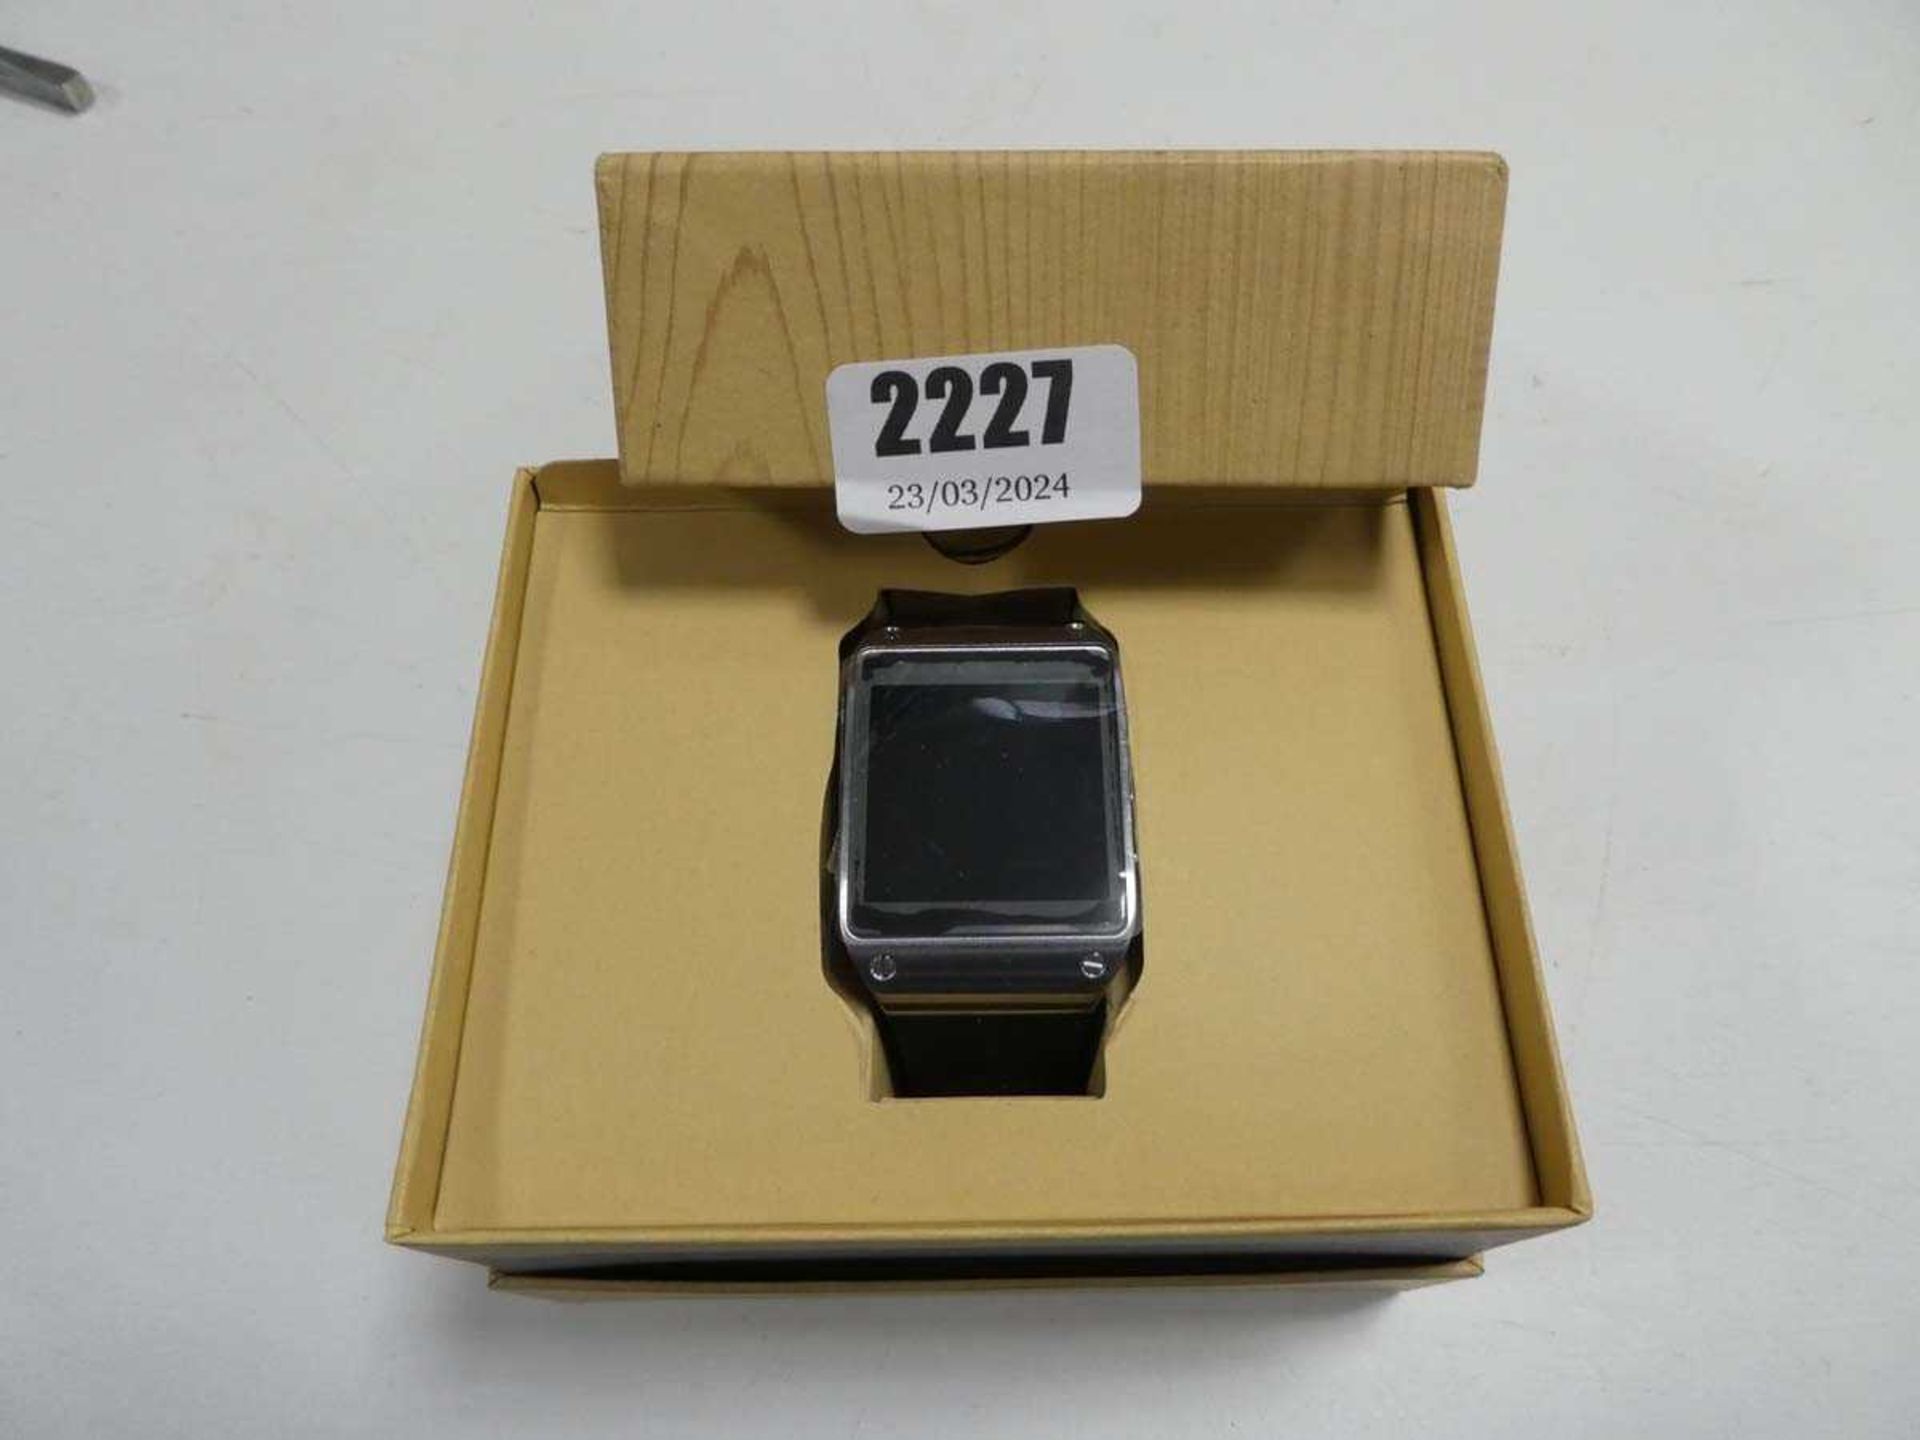 Samsung Galaxy Gear watch, boxed